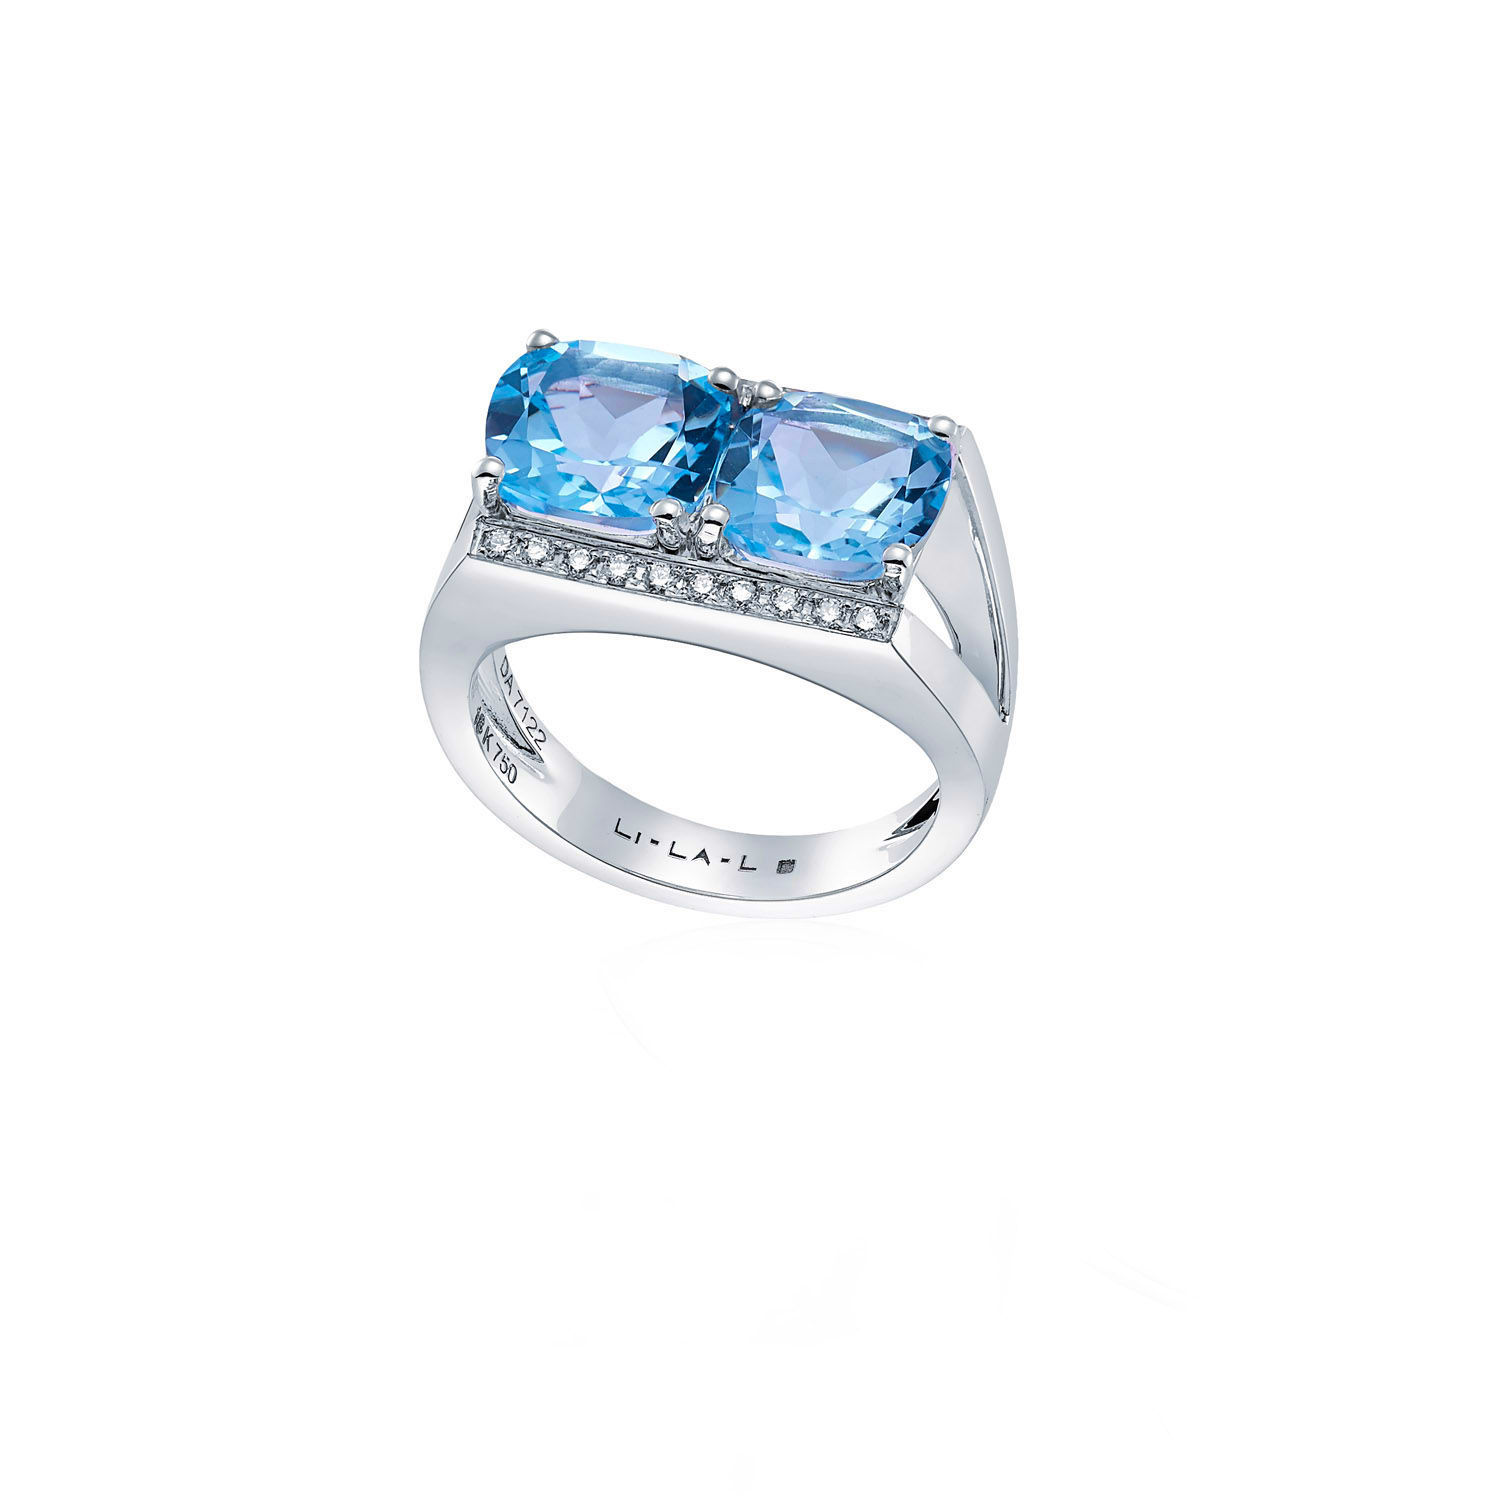 Δαχτυλίδι Secret Garden από λευκό χρυσό 18K με μπλε τοπάζι και διαμάντια μπριγιάν